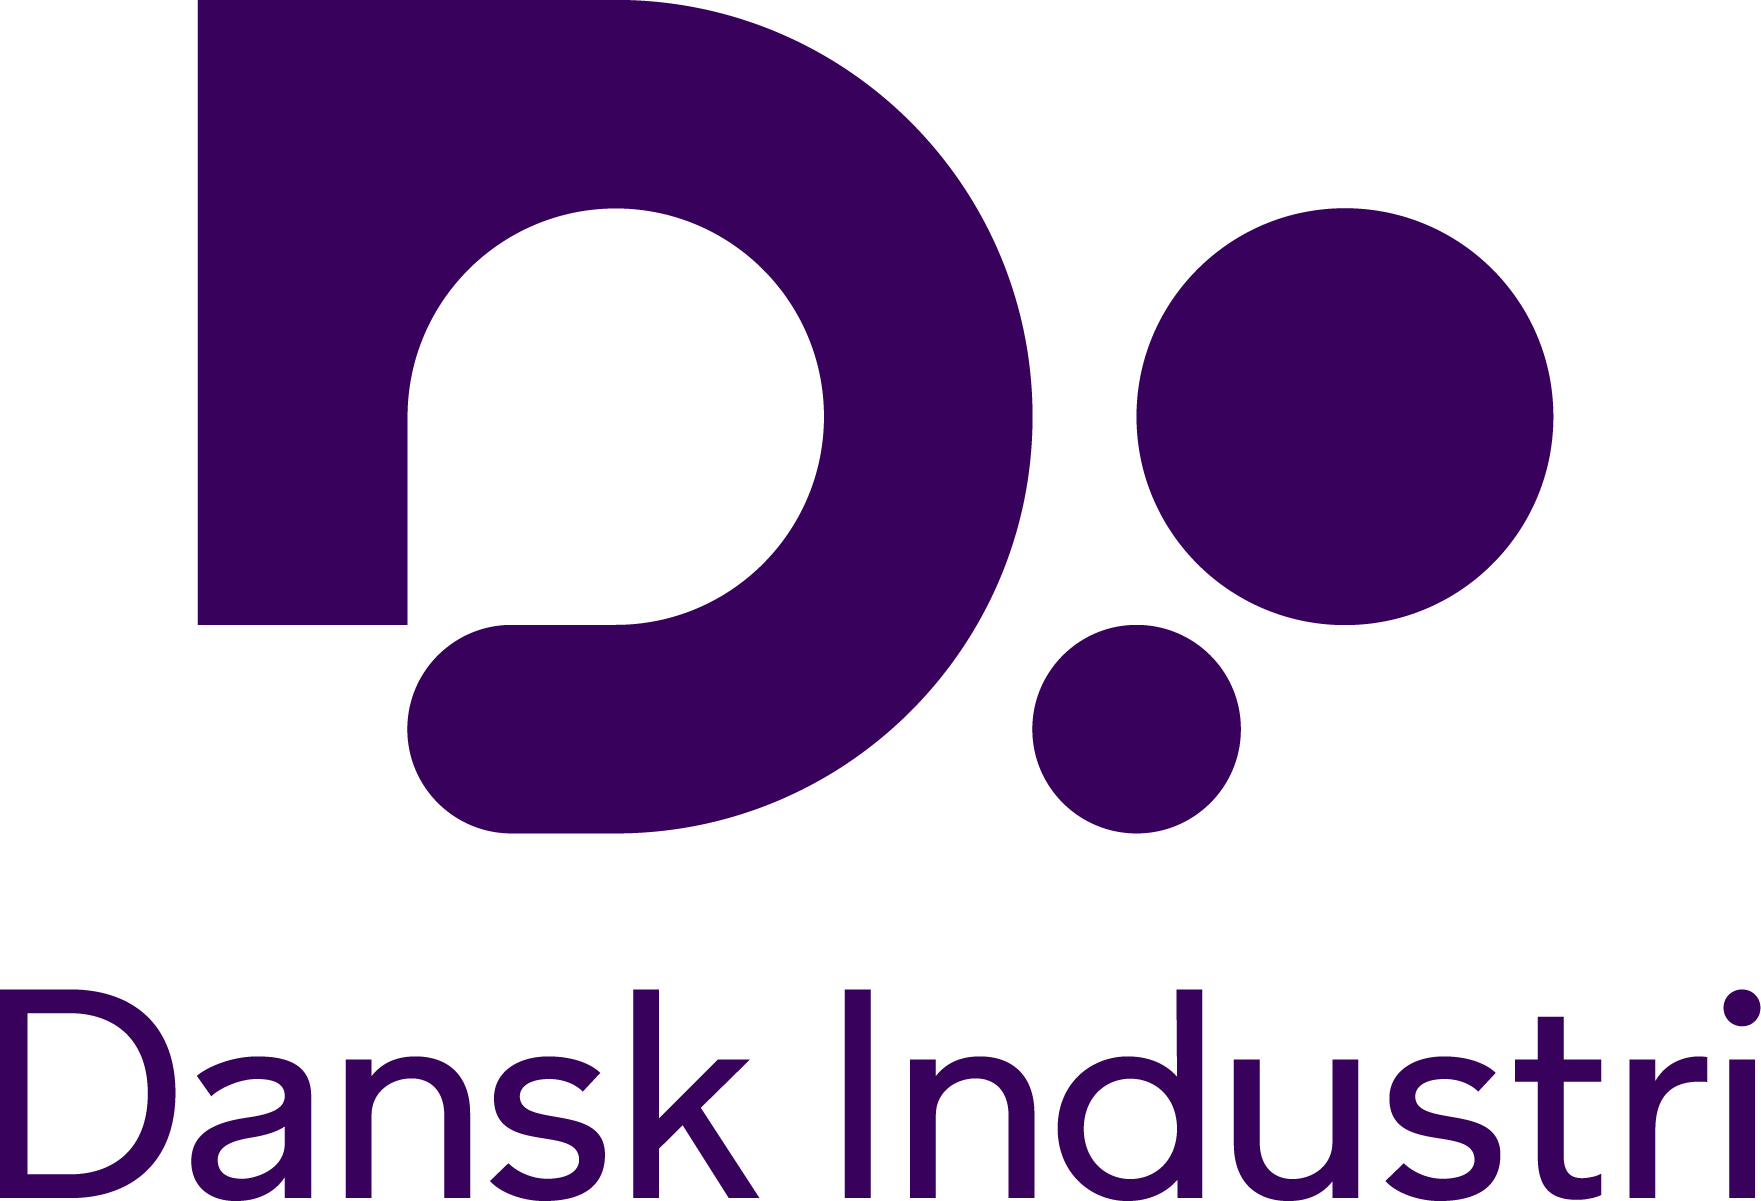 Dansk industri logo 24 - hentet fra logopakken